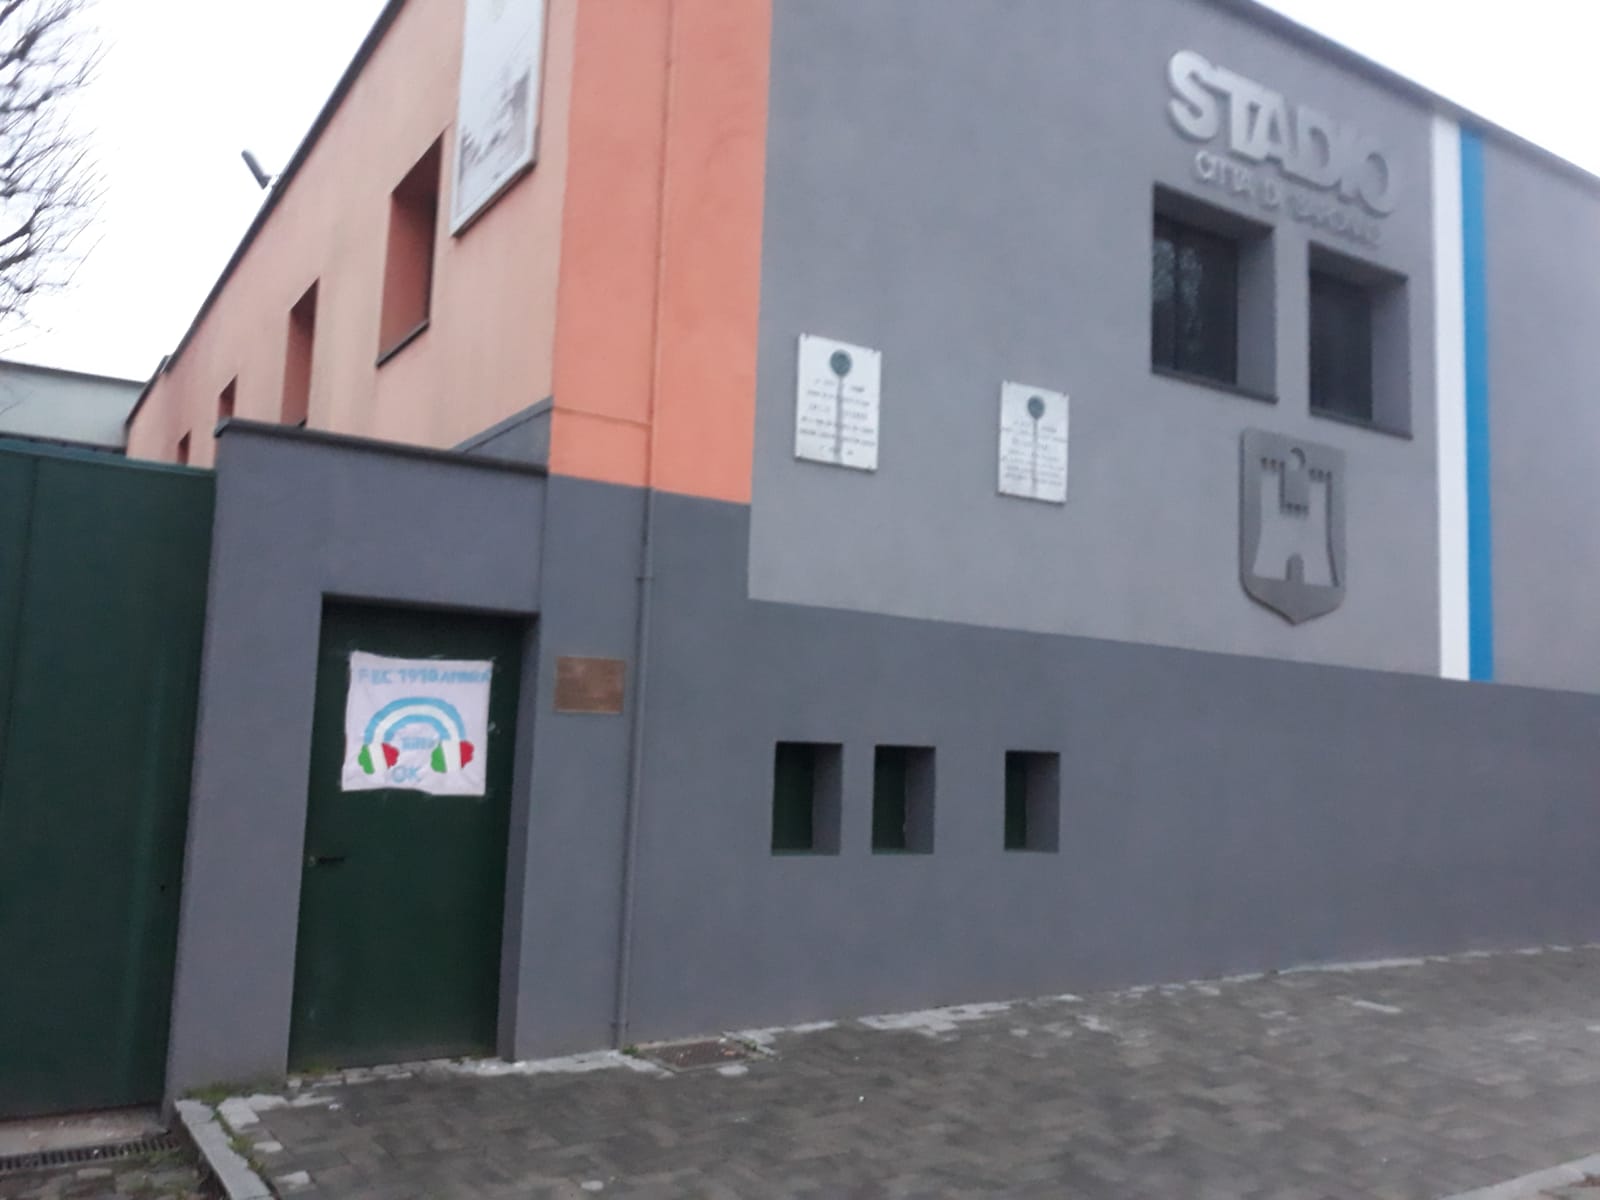 Calcio Saronno-Pavia, ordinanza urgente: divieti, aree chiuse al traffico e posteggio riservato